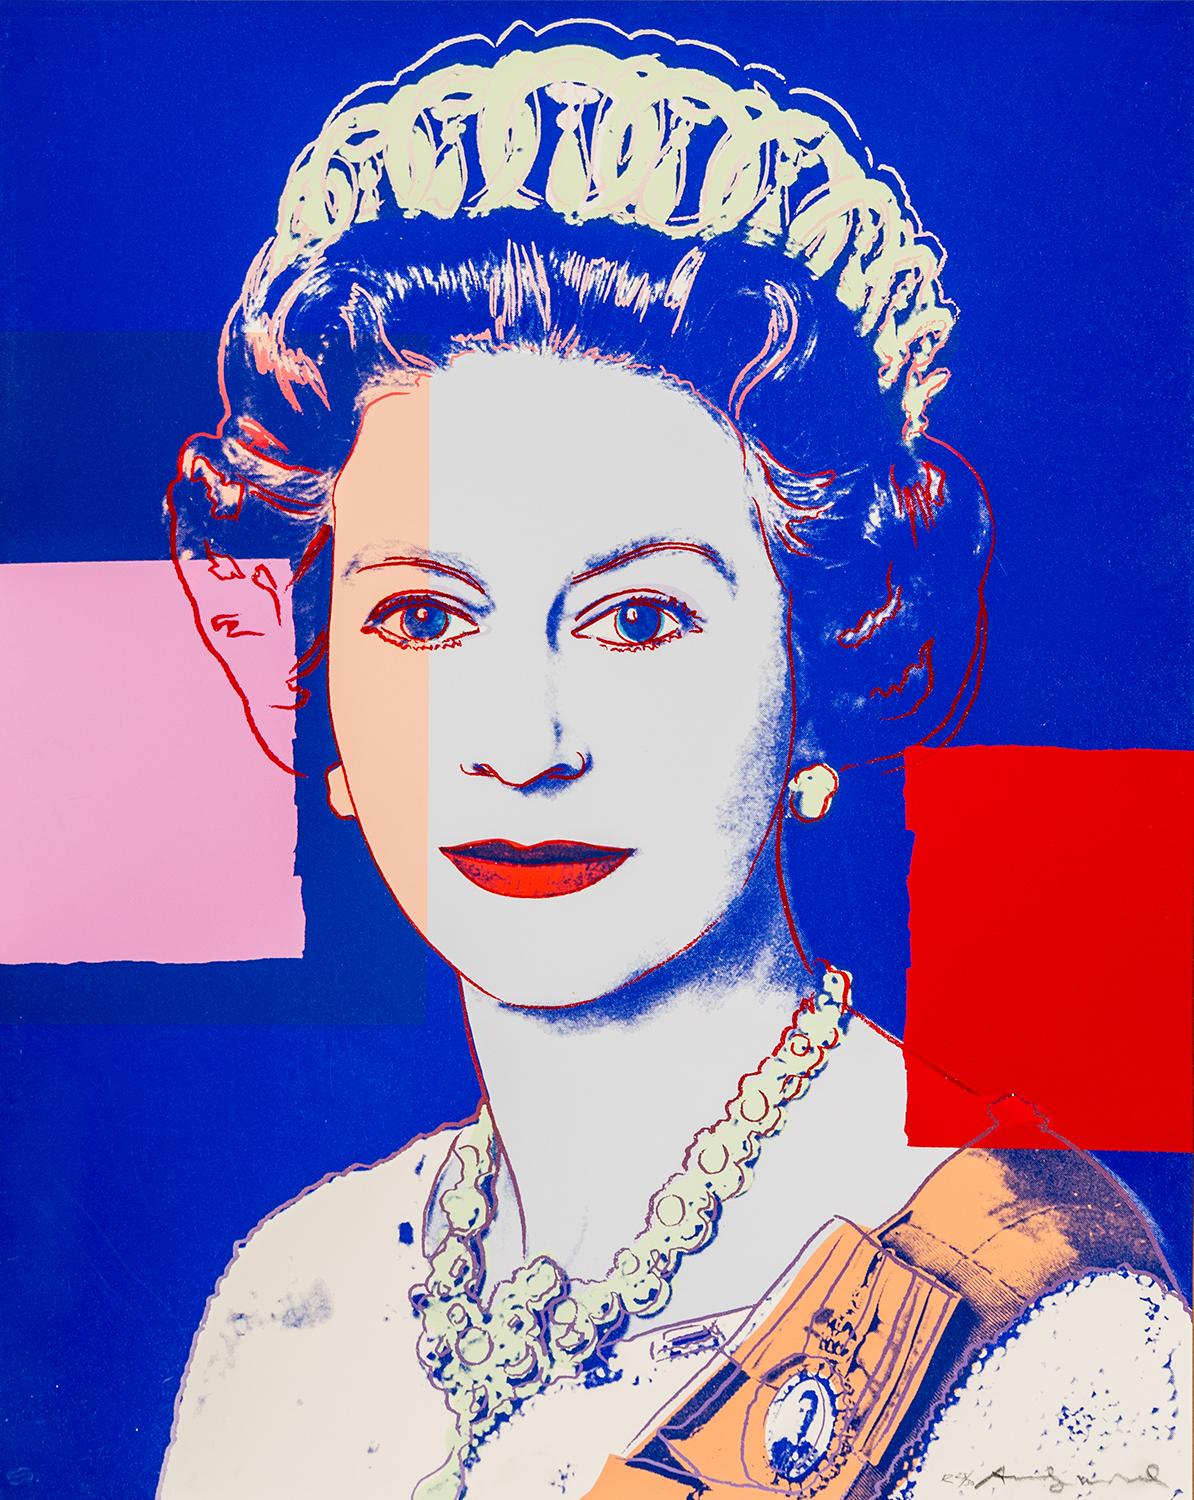 Andy Warhol, “Queen Elizabeth II of the United Kingdom”